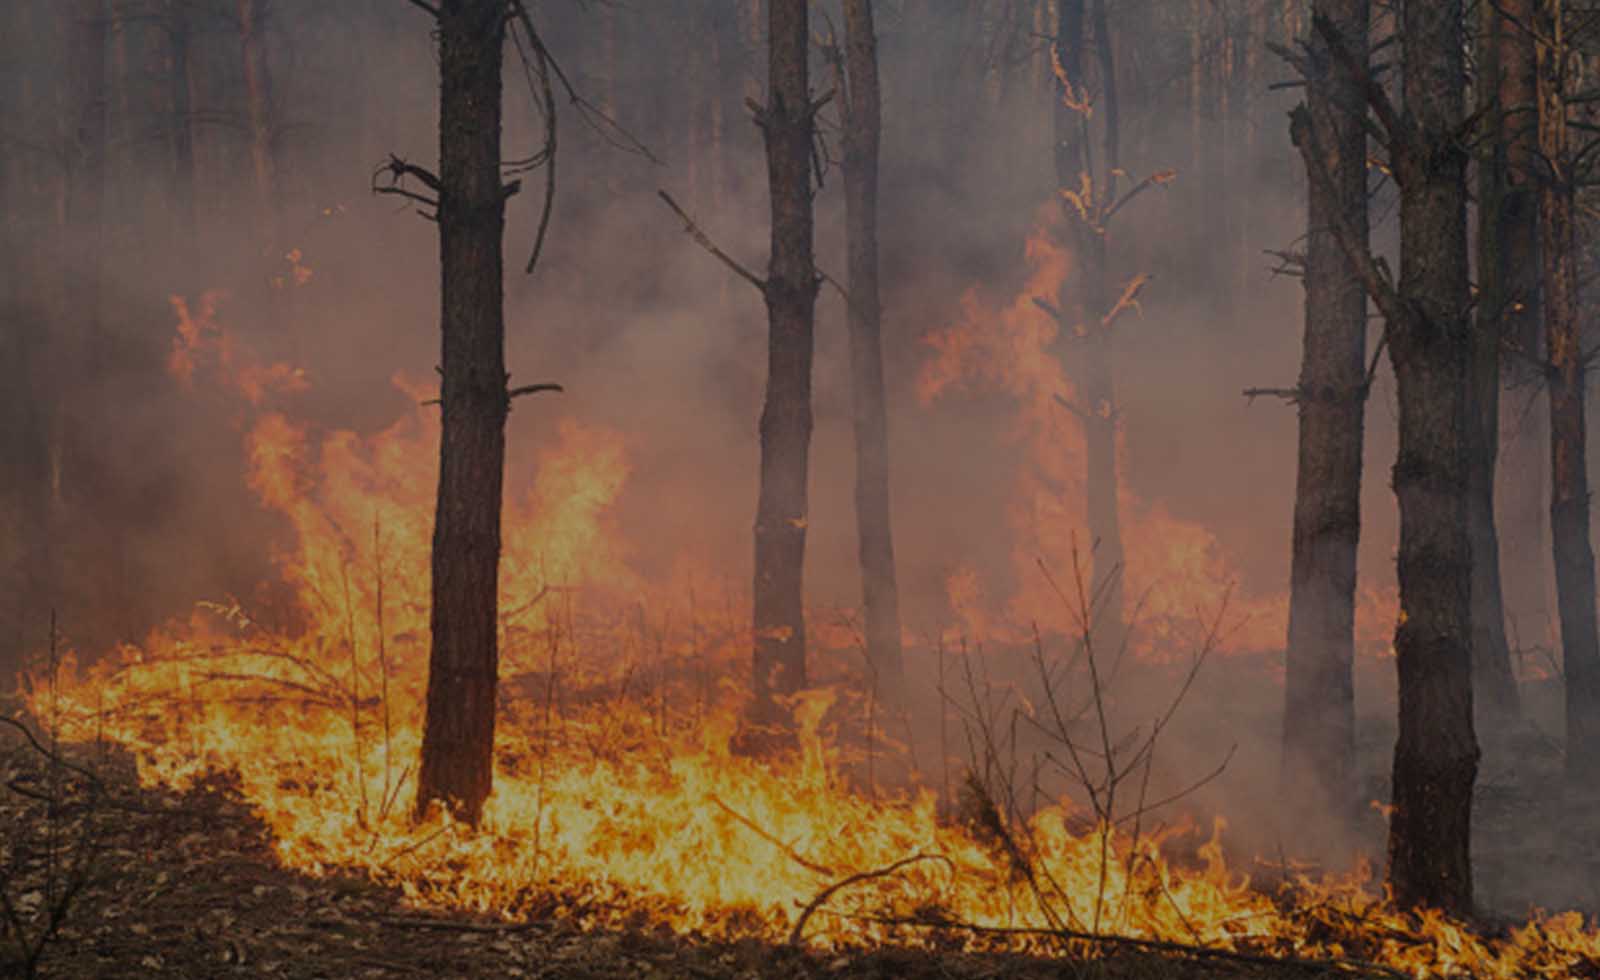 Orman yangınları gerçeği 1: Faili meçhul, akibeti meçhul